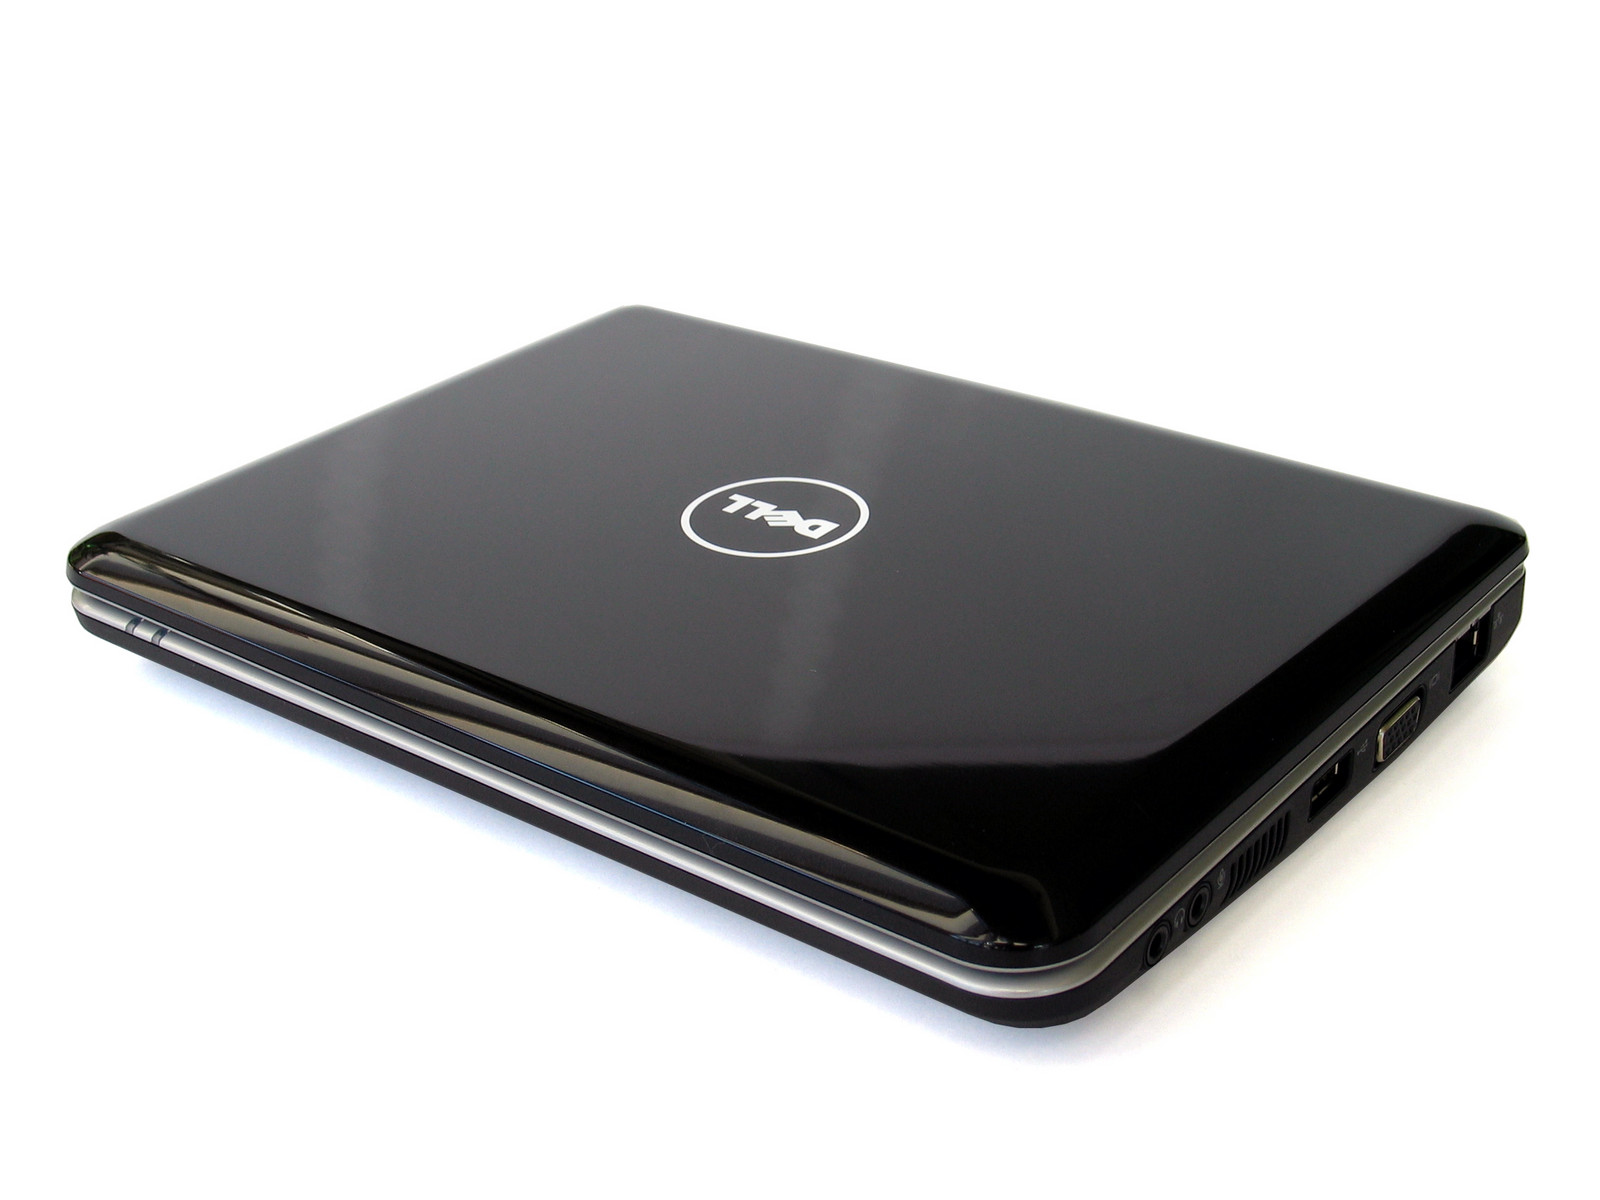 Dell Inspiron Mini 9 Notebookcheck Net External Reviews